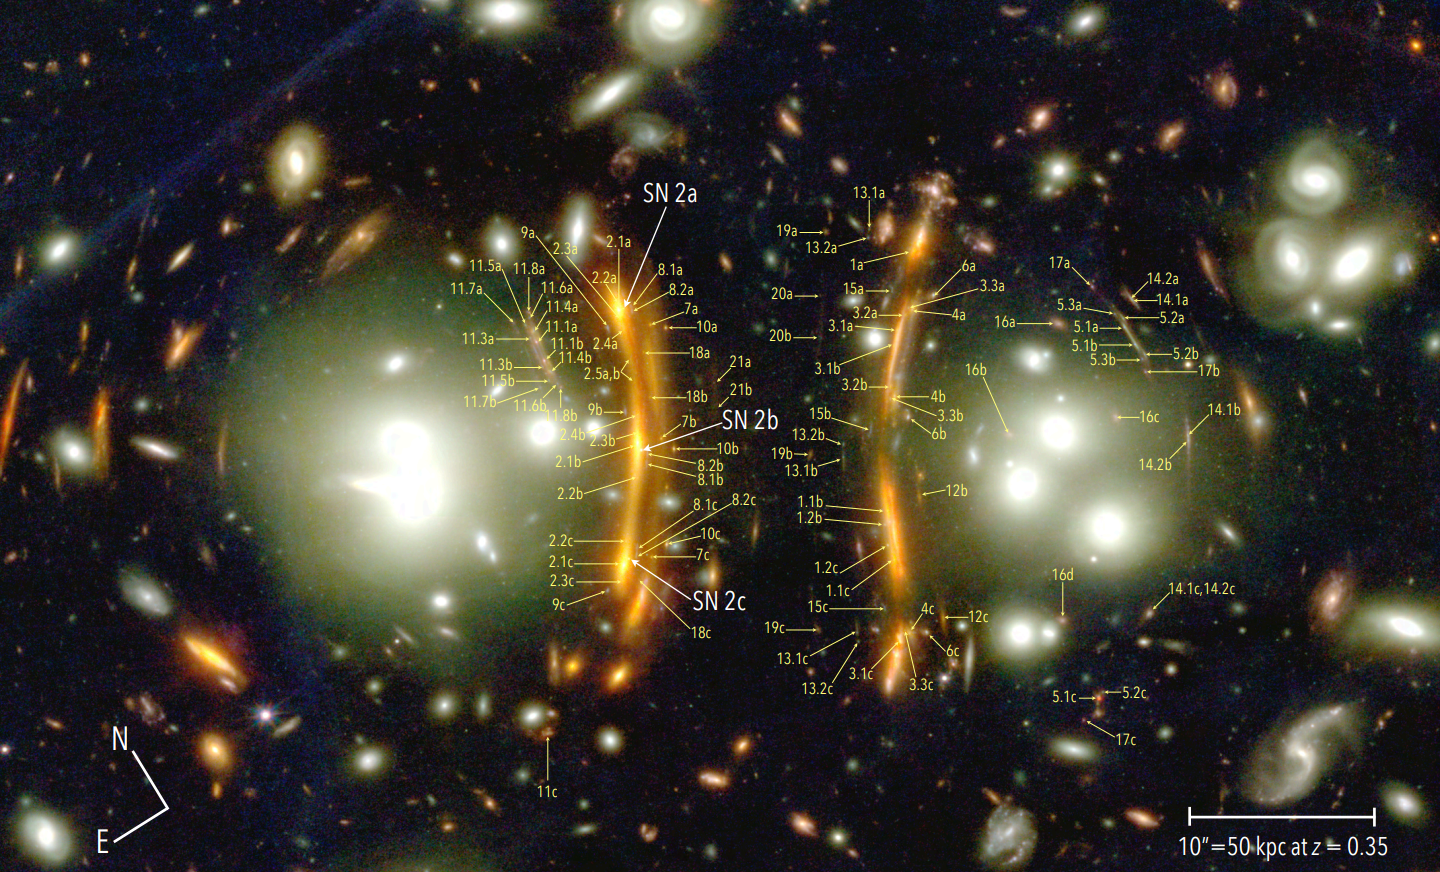 Na ilustracji: Pokazano centralny obszar gromady galaktyk PLCK G165.7+67.0 (w skrócie G165) z podwójnym jądrem oznaczonym w-g położenia na niebie NE i SW oraz oznaczono etykietami struktury soczewkowane przez G165. Na zdjęciu zidentyfikowano przynajmniej 21 takich niezależnych, wielokrotnych źródeł światła zwanych systemami/układami obrazów, które zostały ponumerowane. W szczególności w łukach 2a, 2b i 2c będących obrazem tej samej galaktyki tła zaobserwowano potrójny obraz supernowej H0pe - obecnie drugiej co do odległości zaobserwowanej supernowej typu Ia. Źródło (CC BY 4.0): arXiv:2309.07326 [astro-ph.GA]